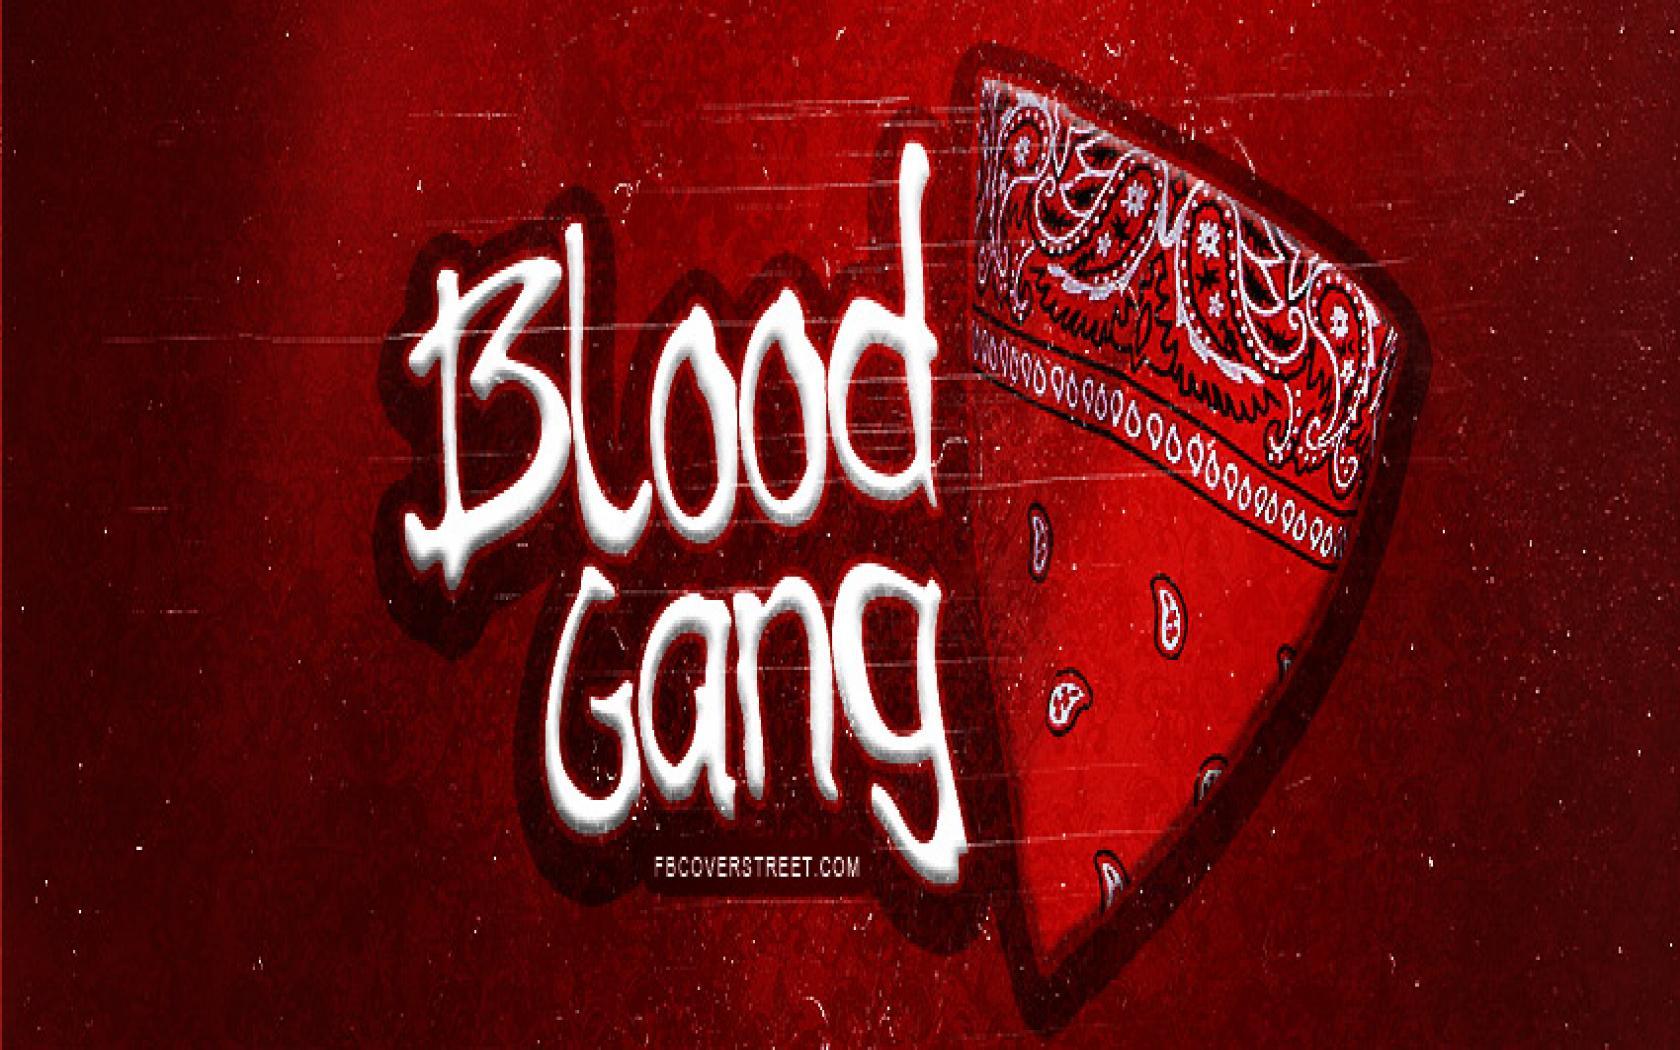 Blood street gang гта 5 фото 18